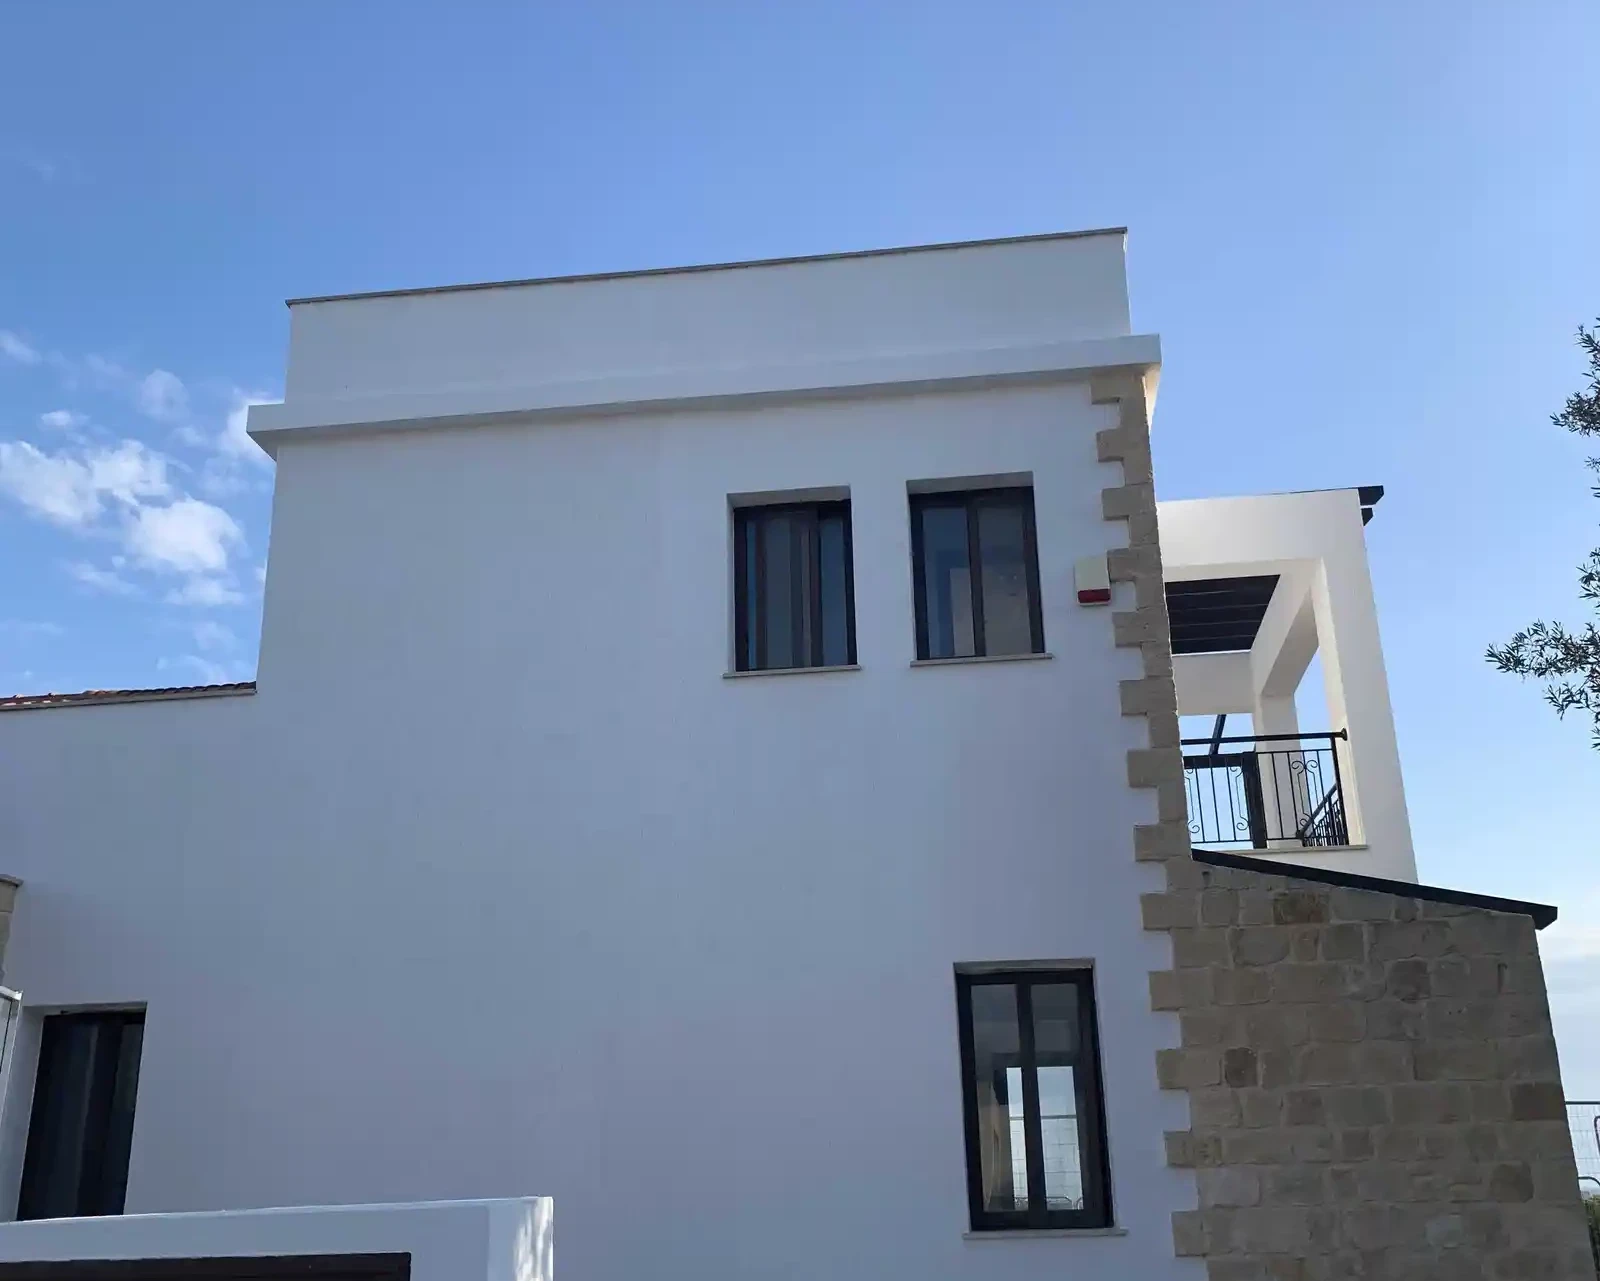 3-bedroom villa to rent €3.200, image 1